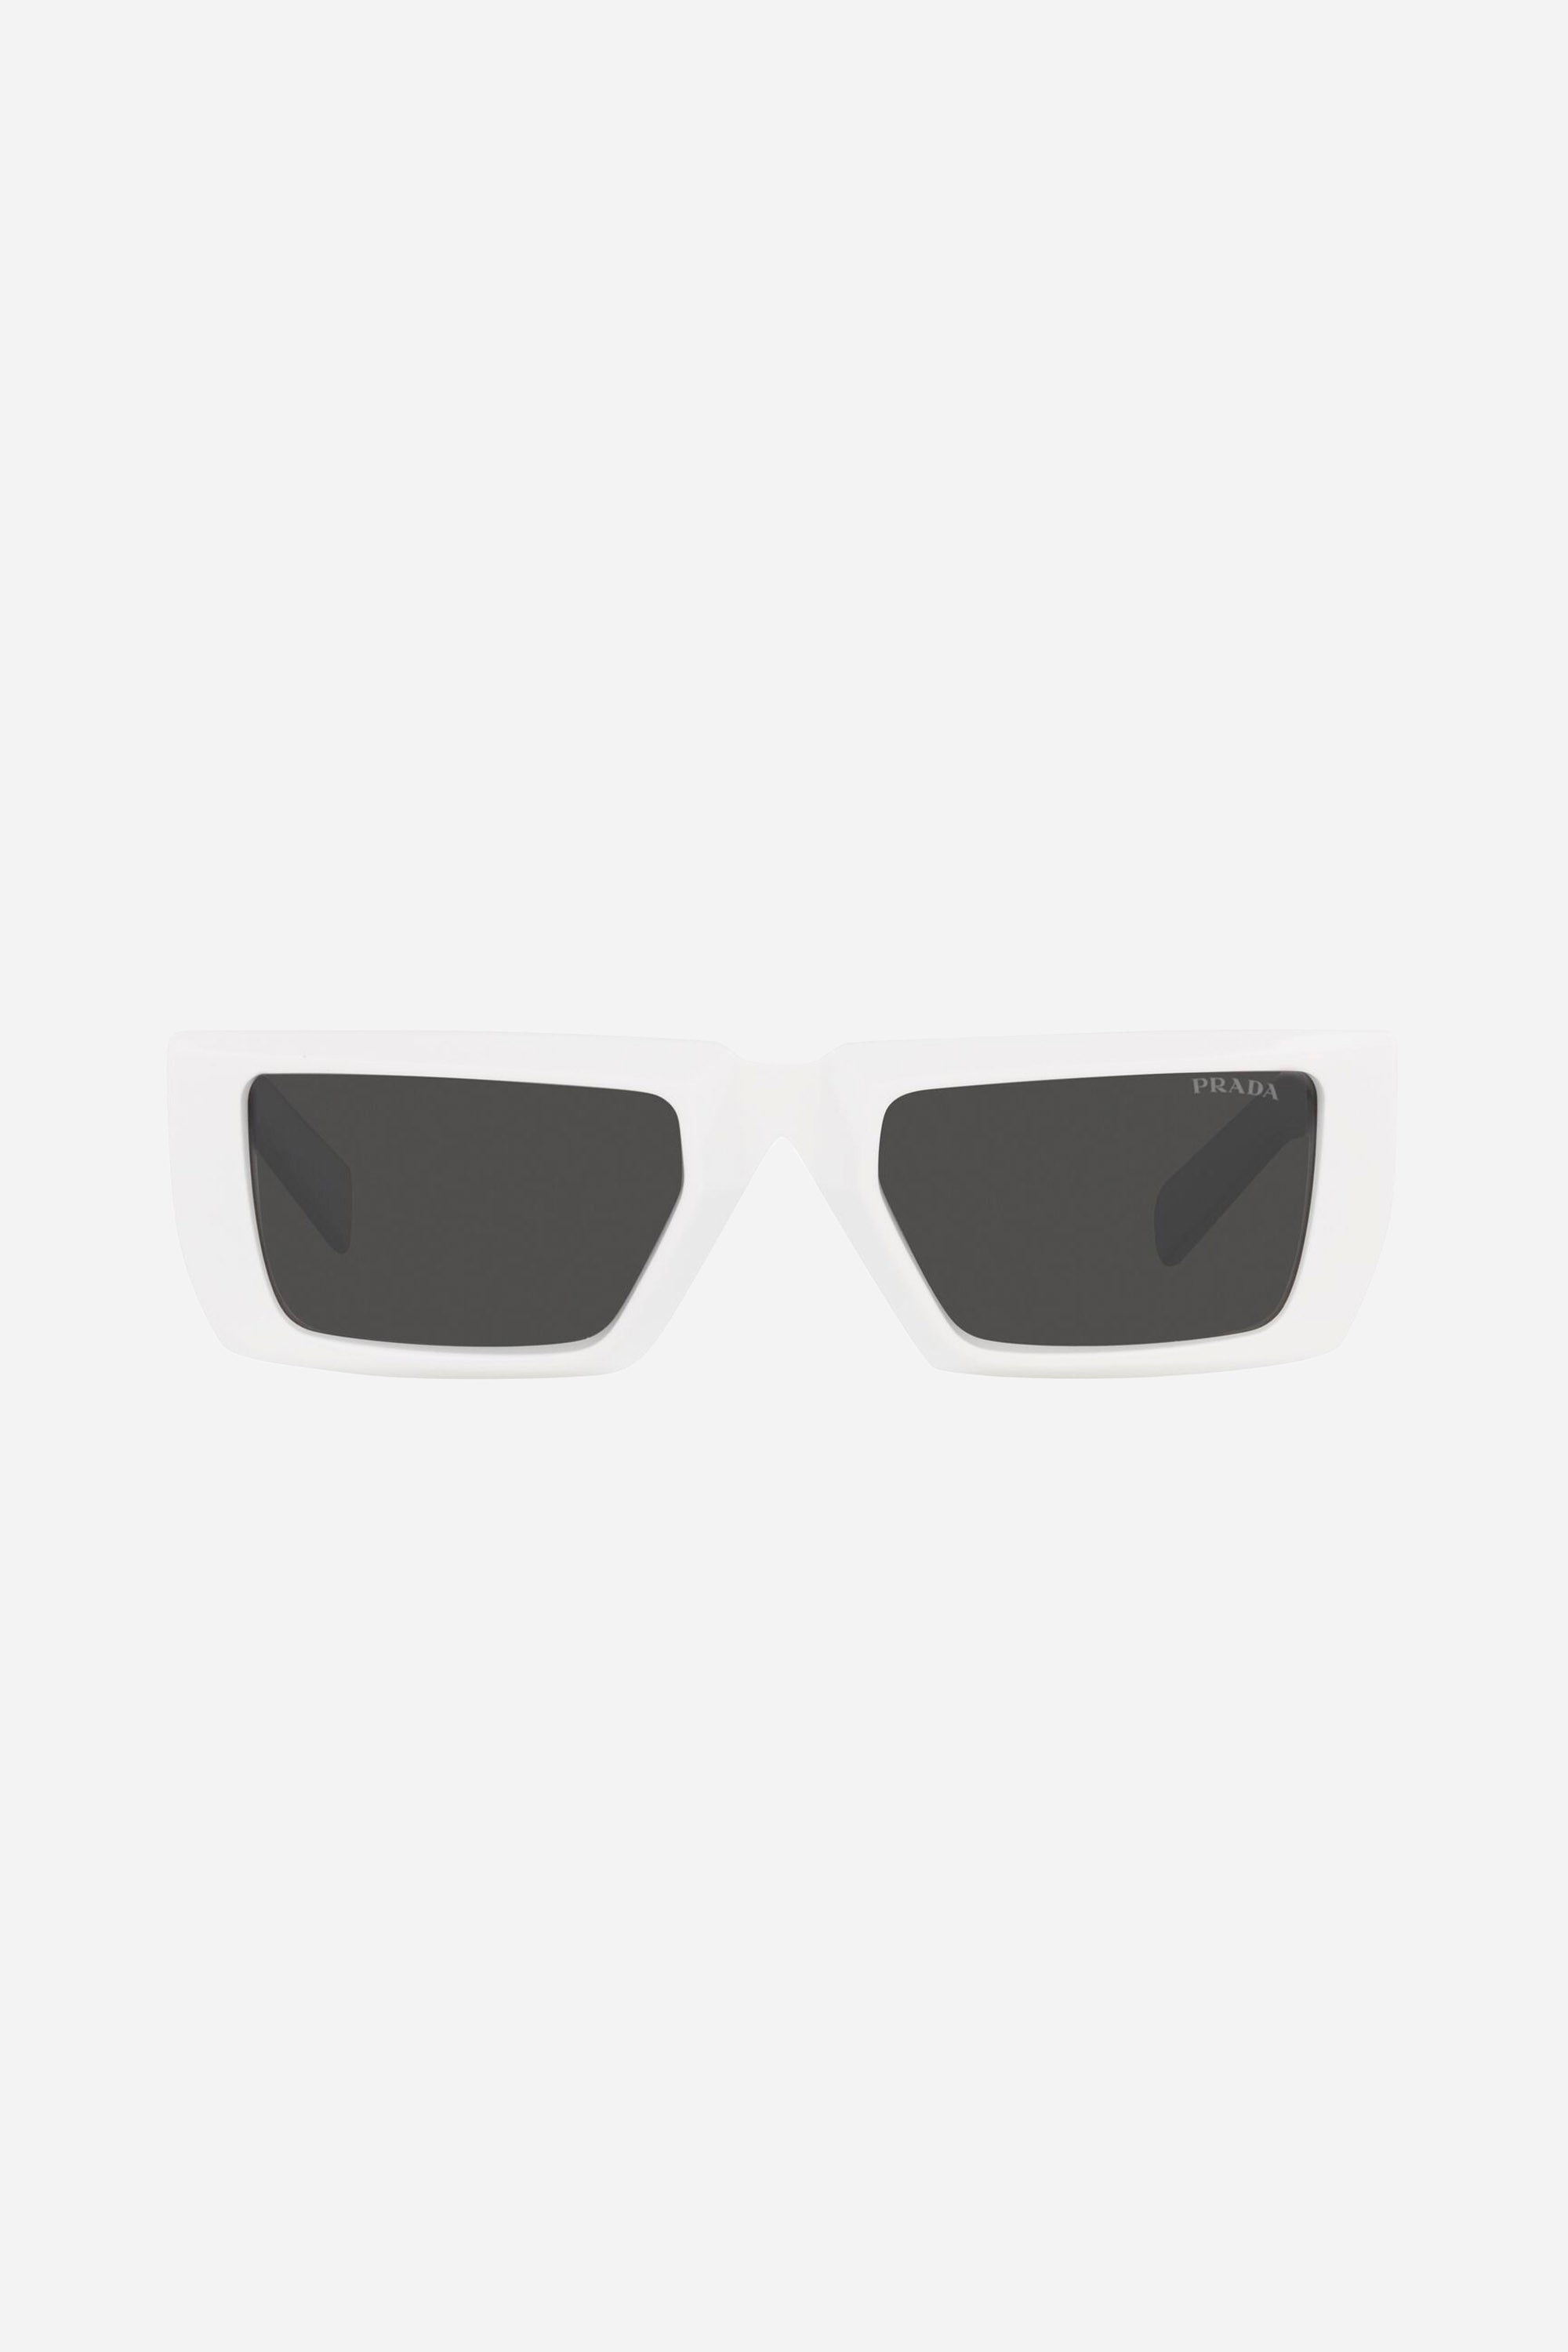 Prada runway squared white sunglasses - Eyewear Club